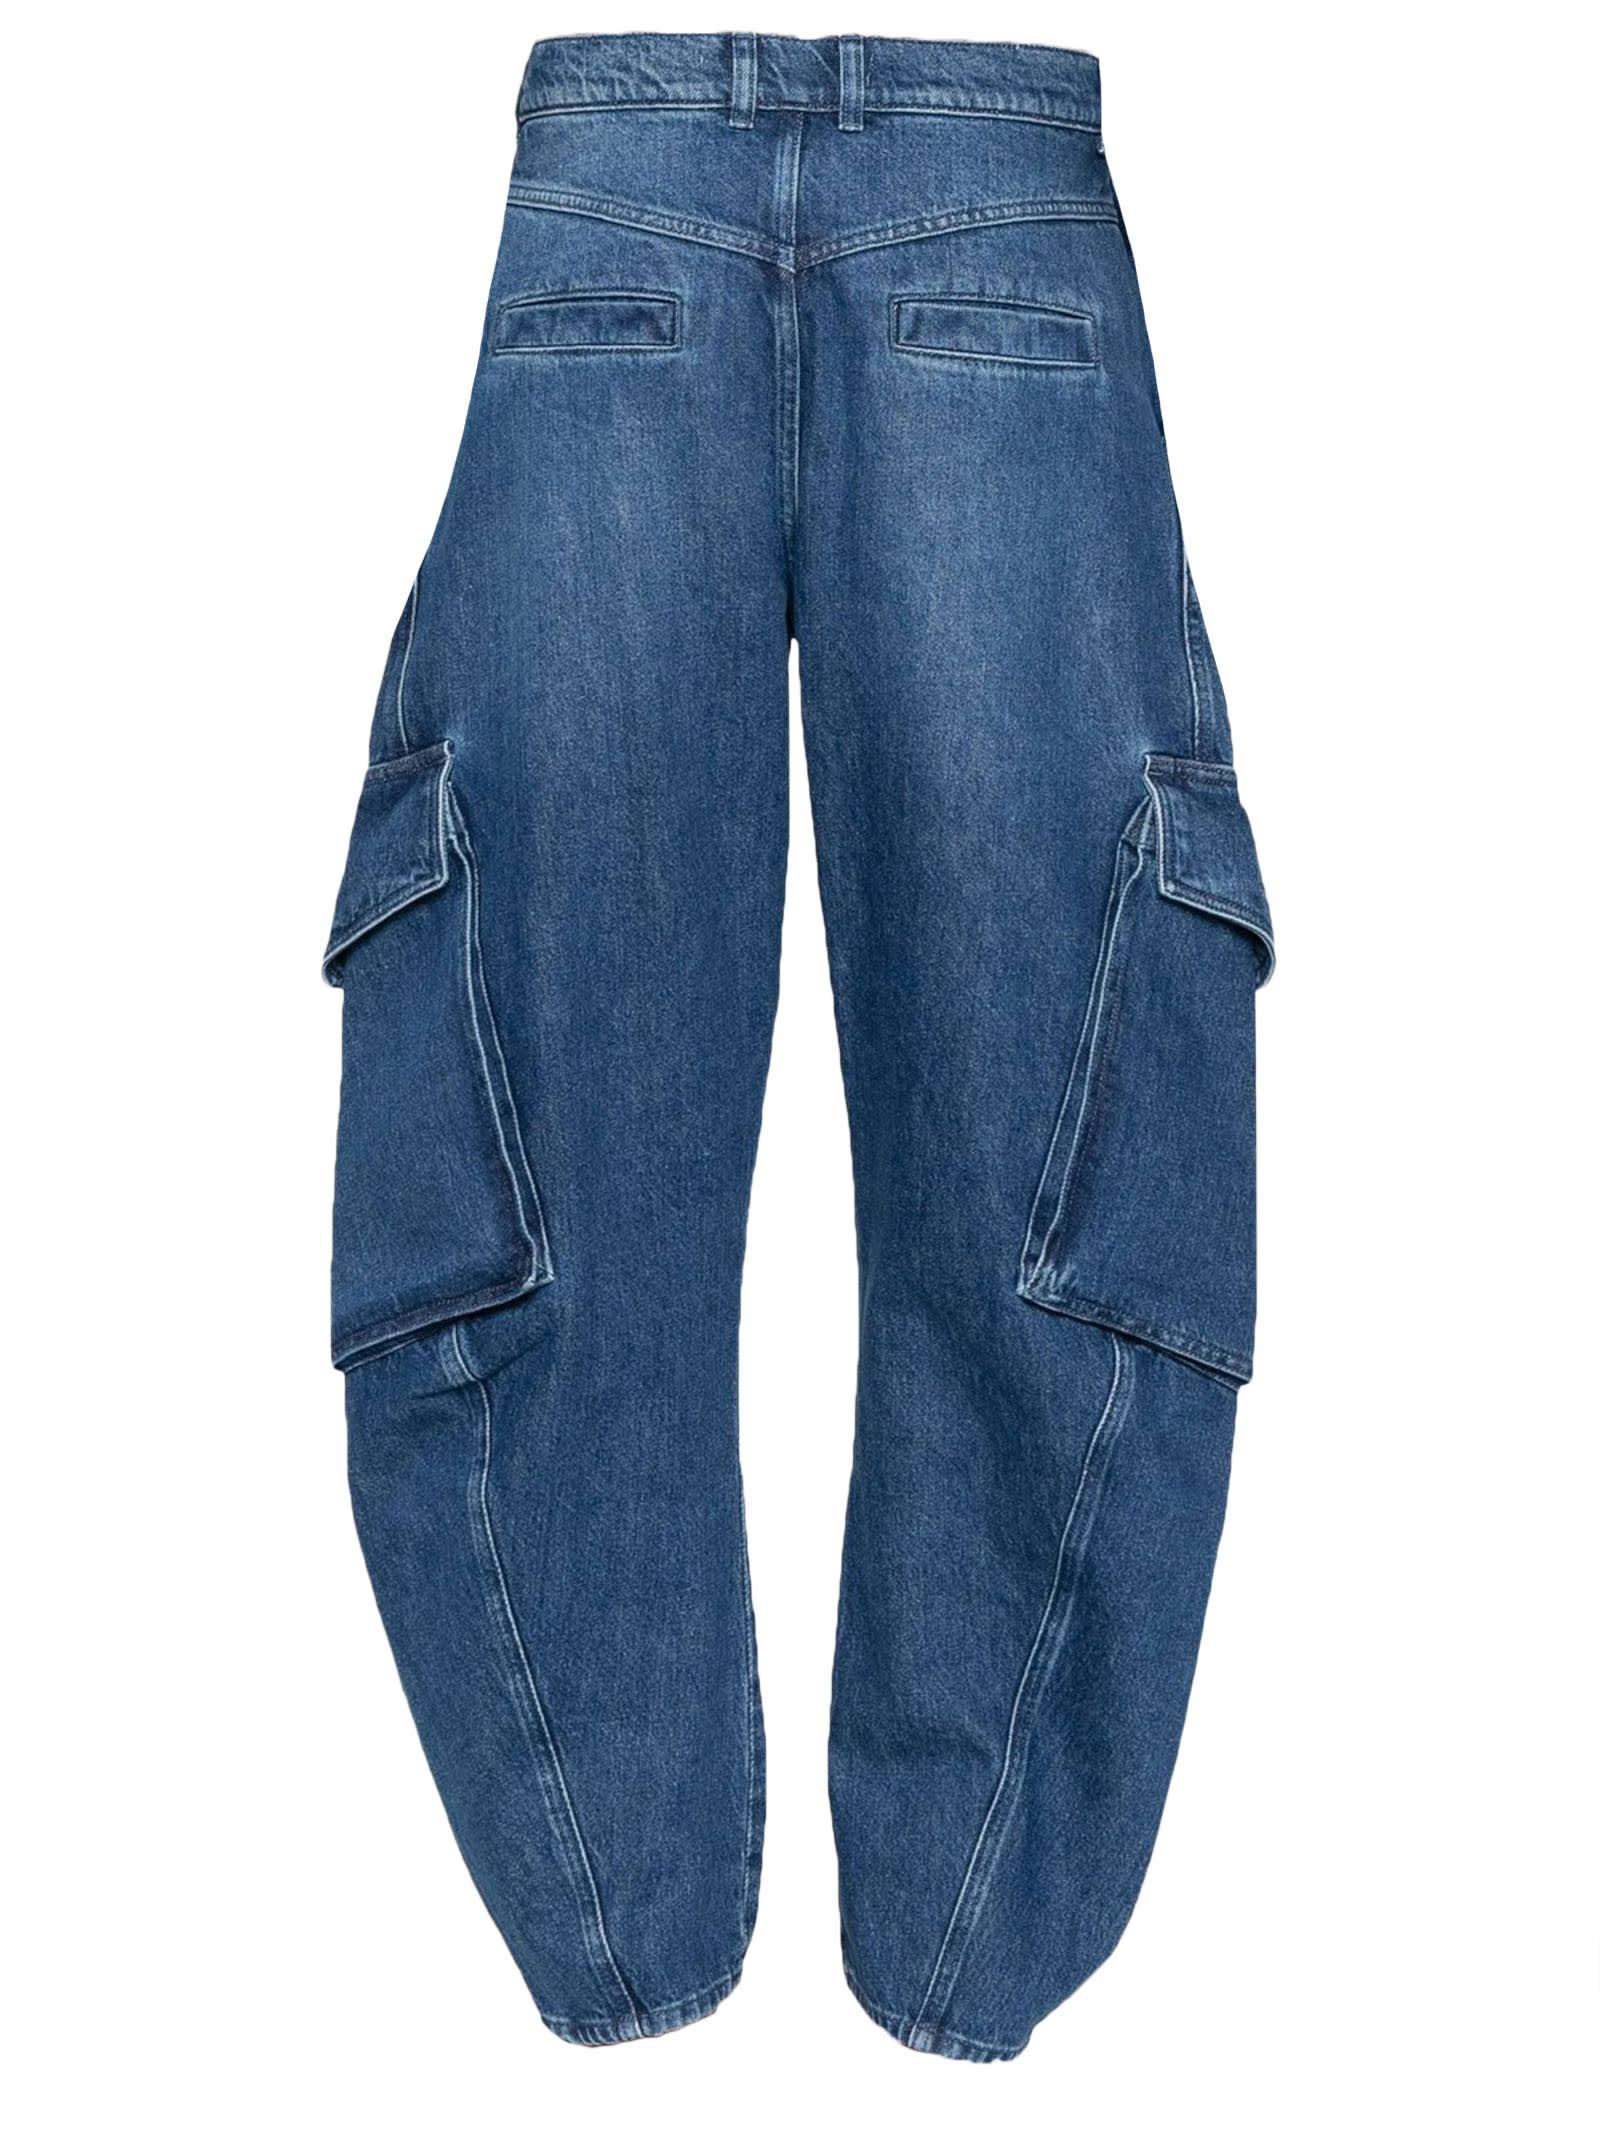 Shop Jw Anderson Indigo Blue Cotton Blend Jeans